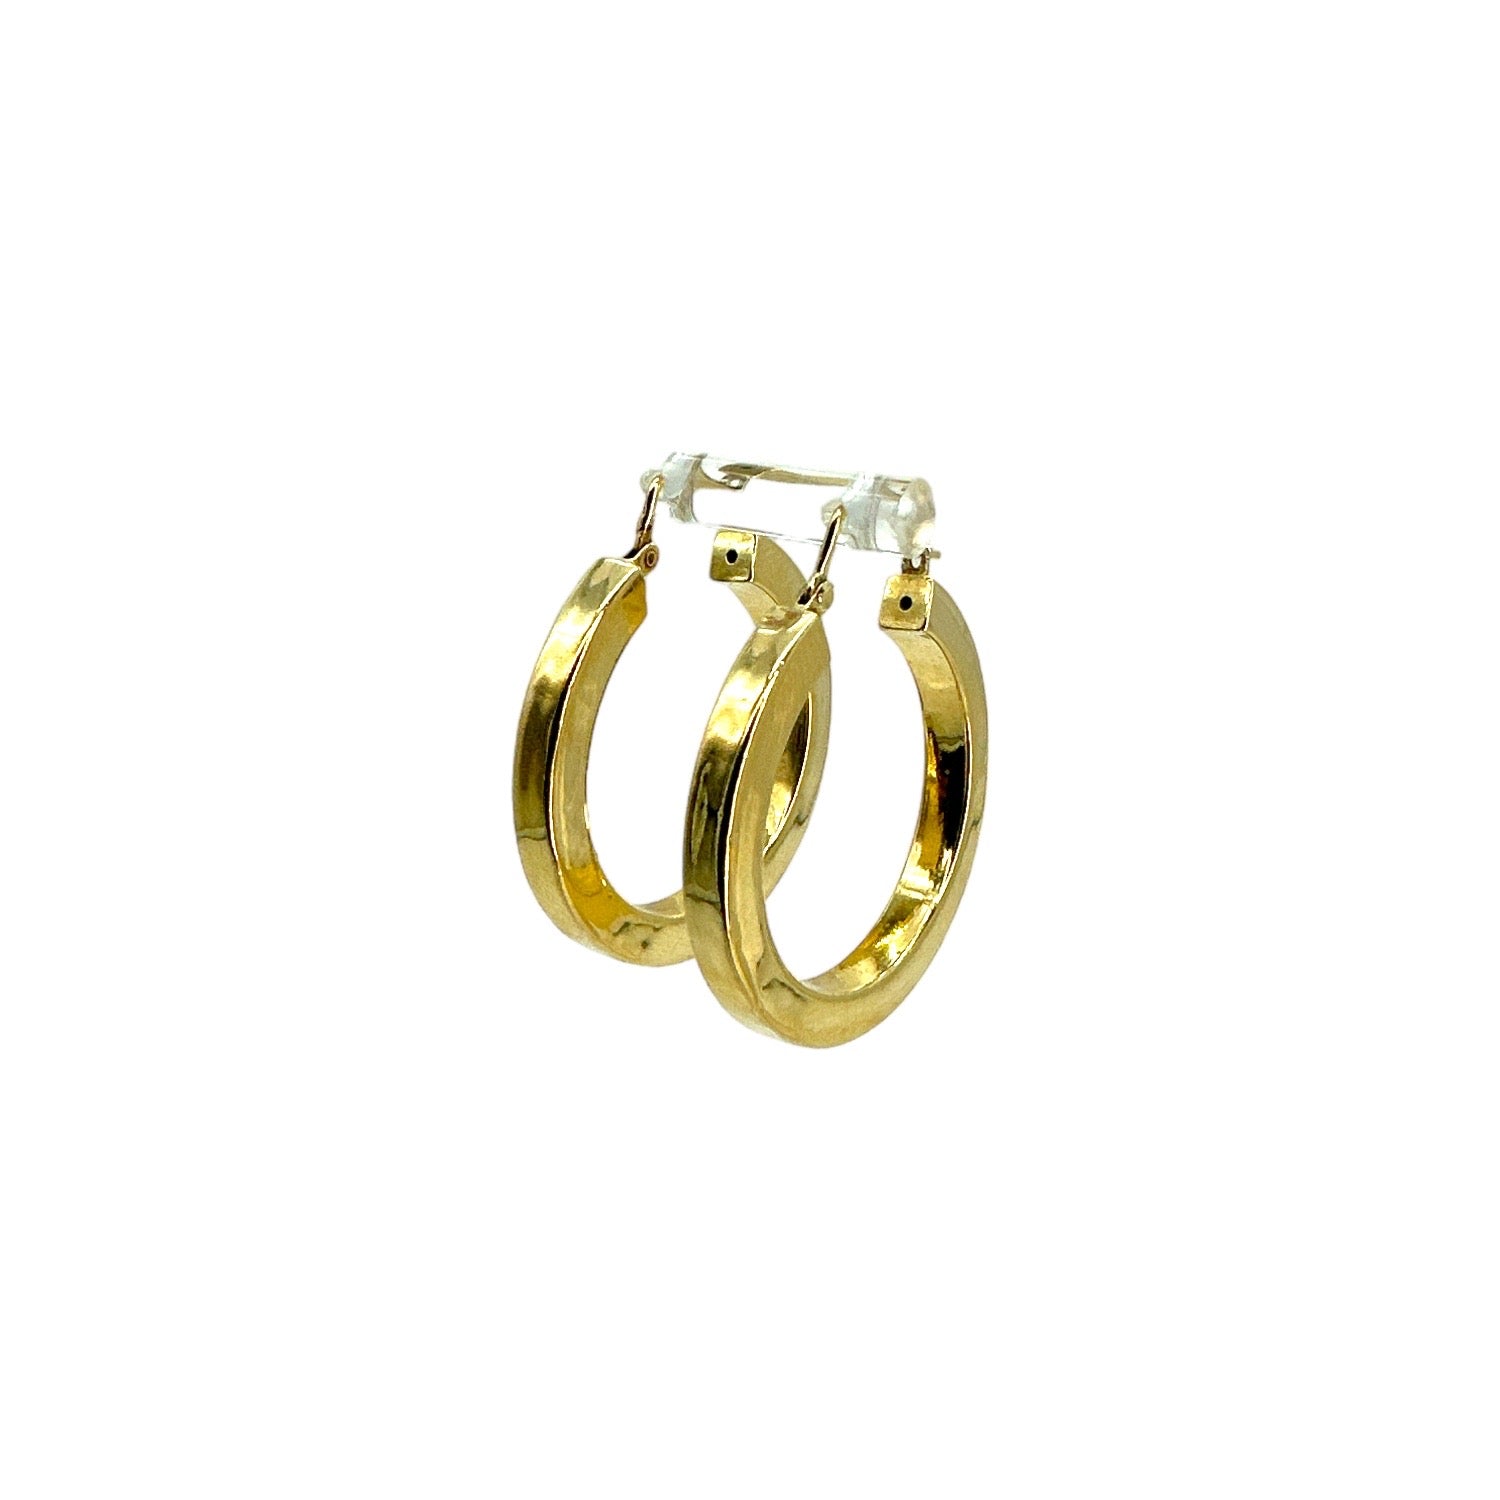 Louis Vuitton Wild V Hoop Earrings - Gold-Tone Metal Hoop